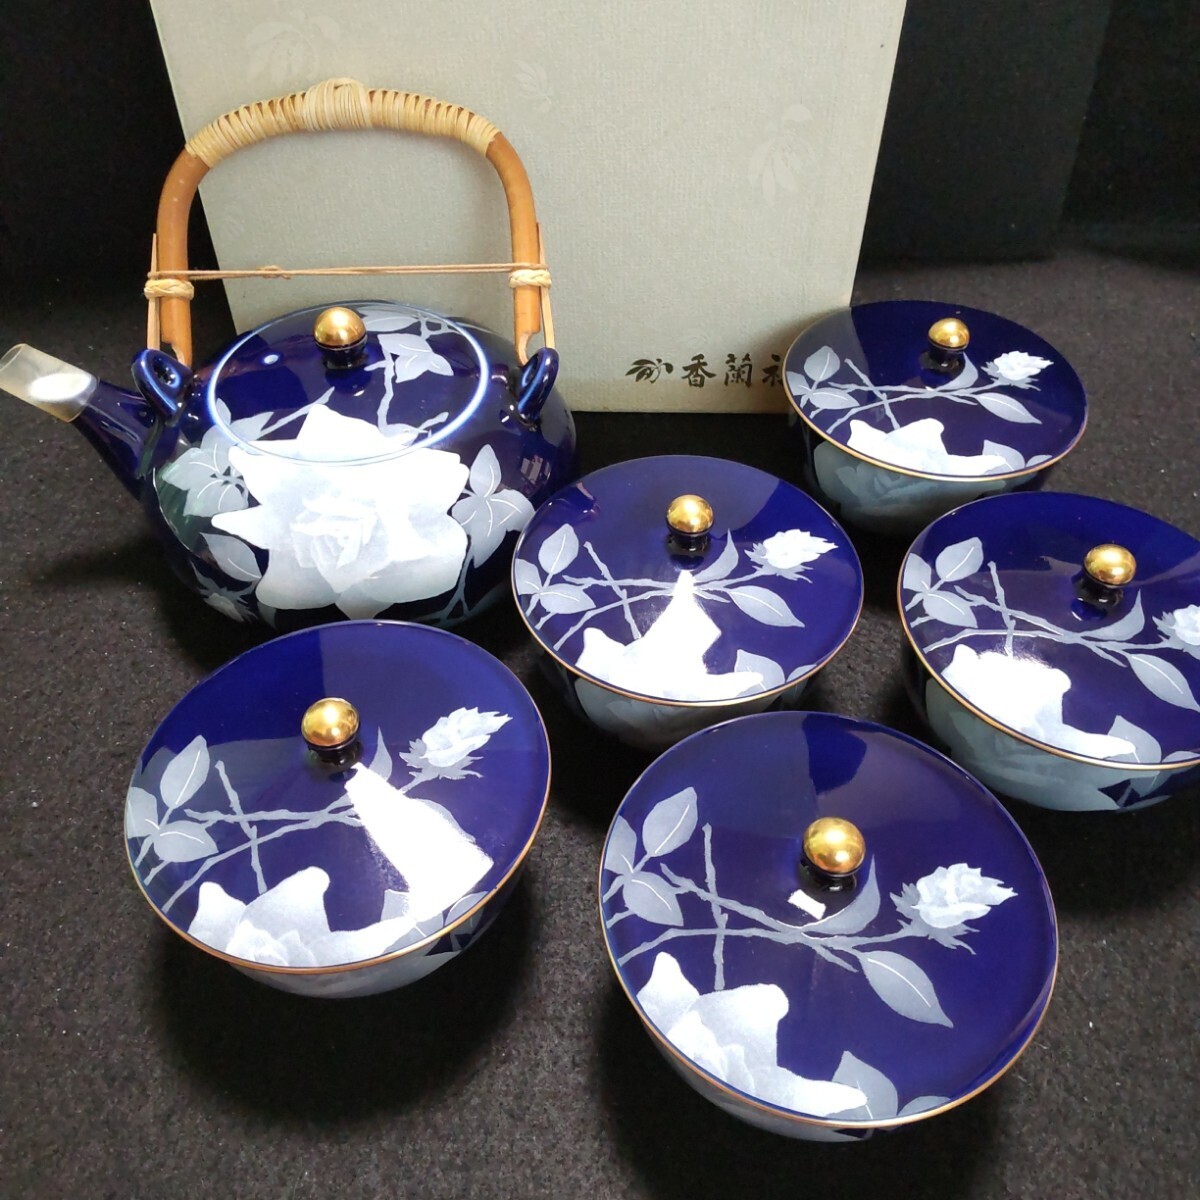 香蘭社 食器4点セット 瑠璃 薔薇 茶器セット 茶の間セット ペアカップ&ソーサー 茶托の画像2